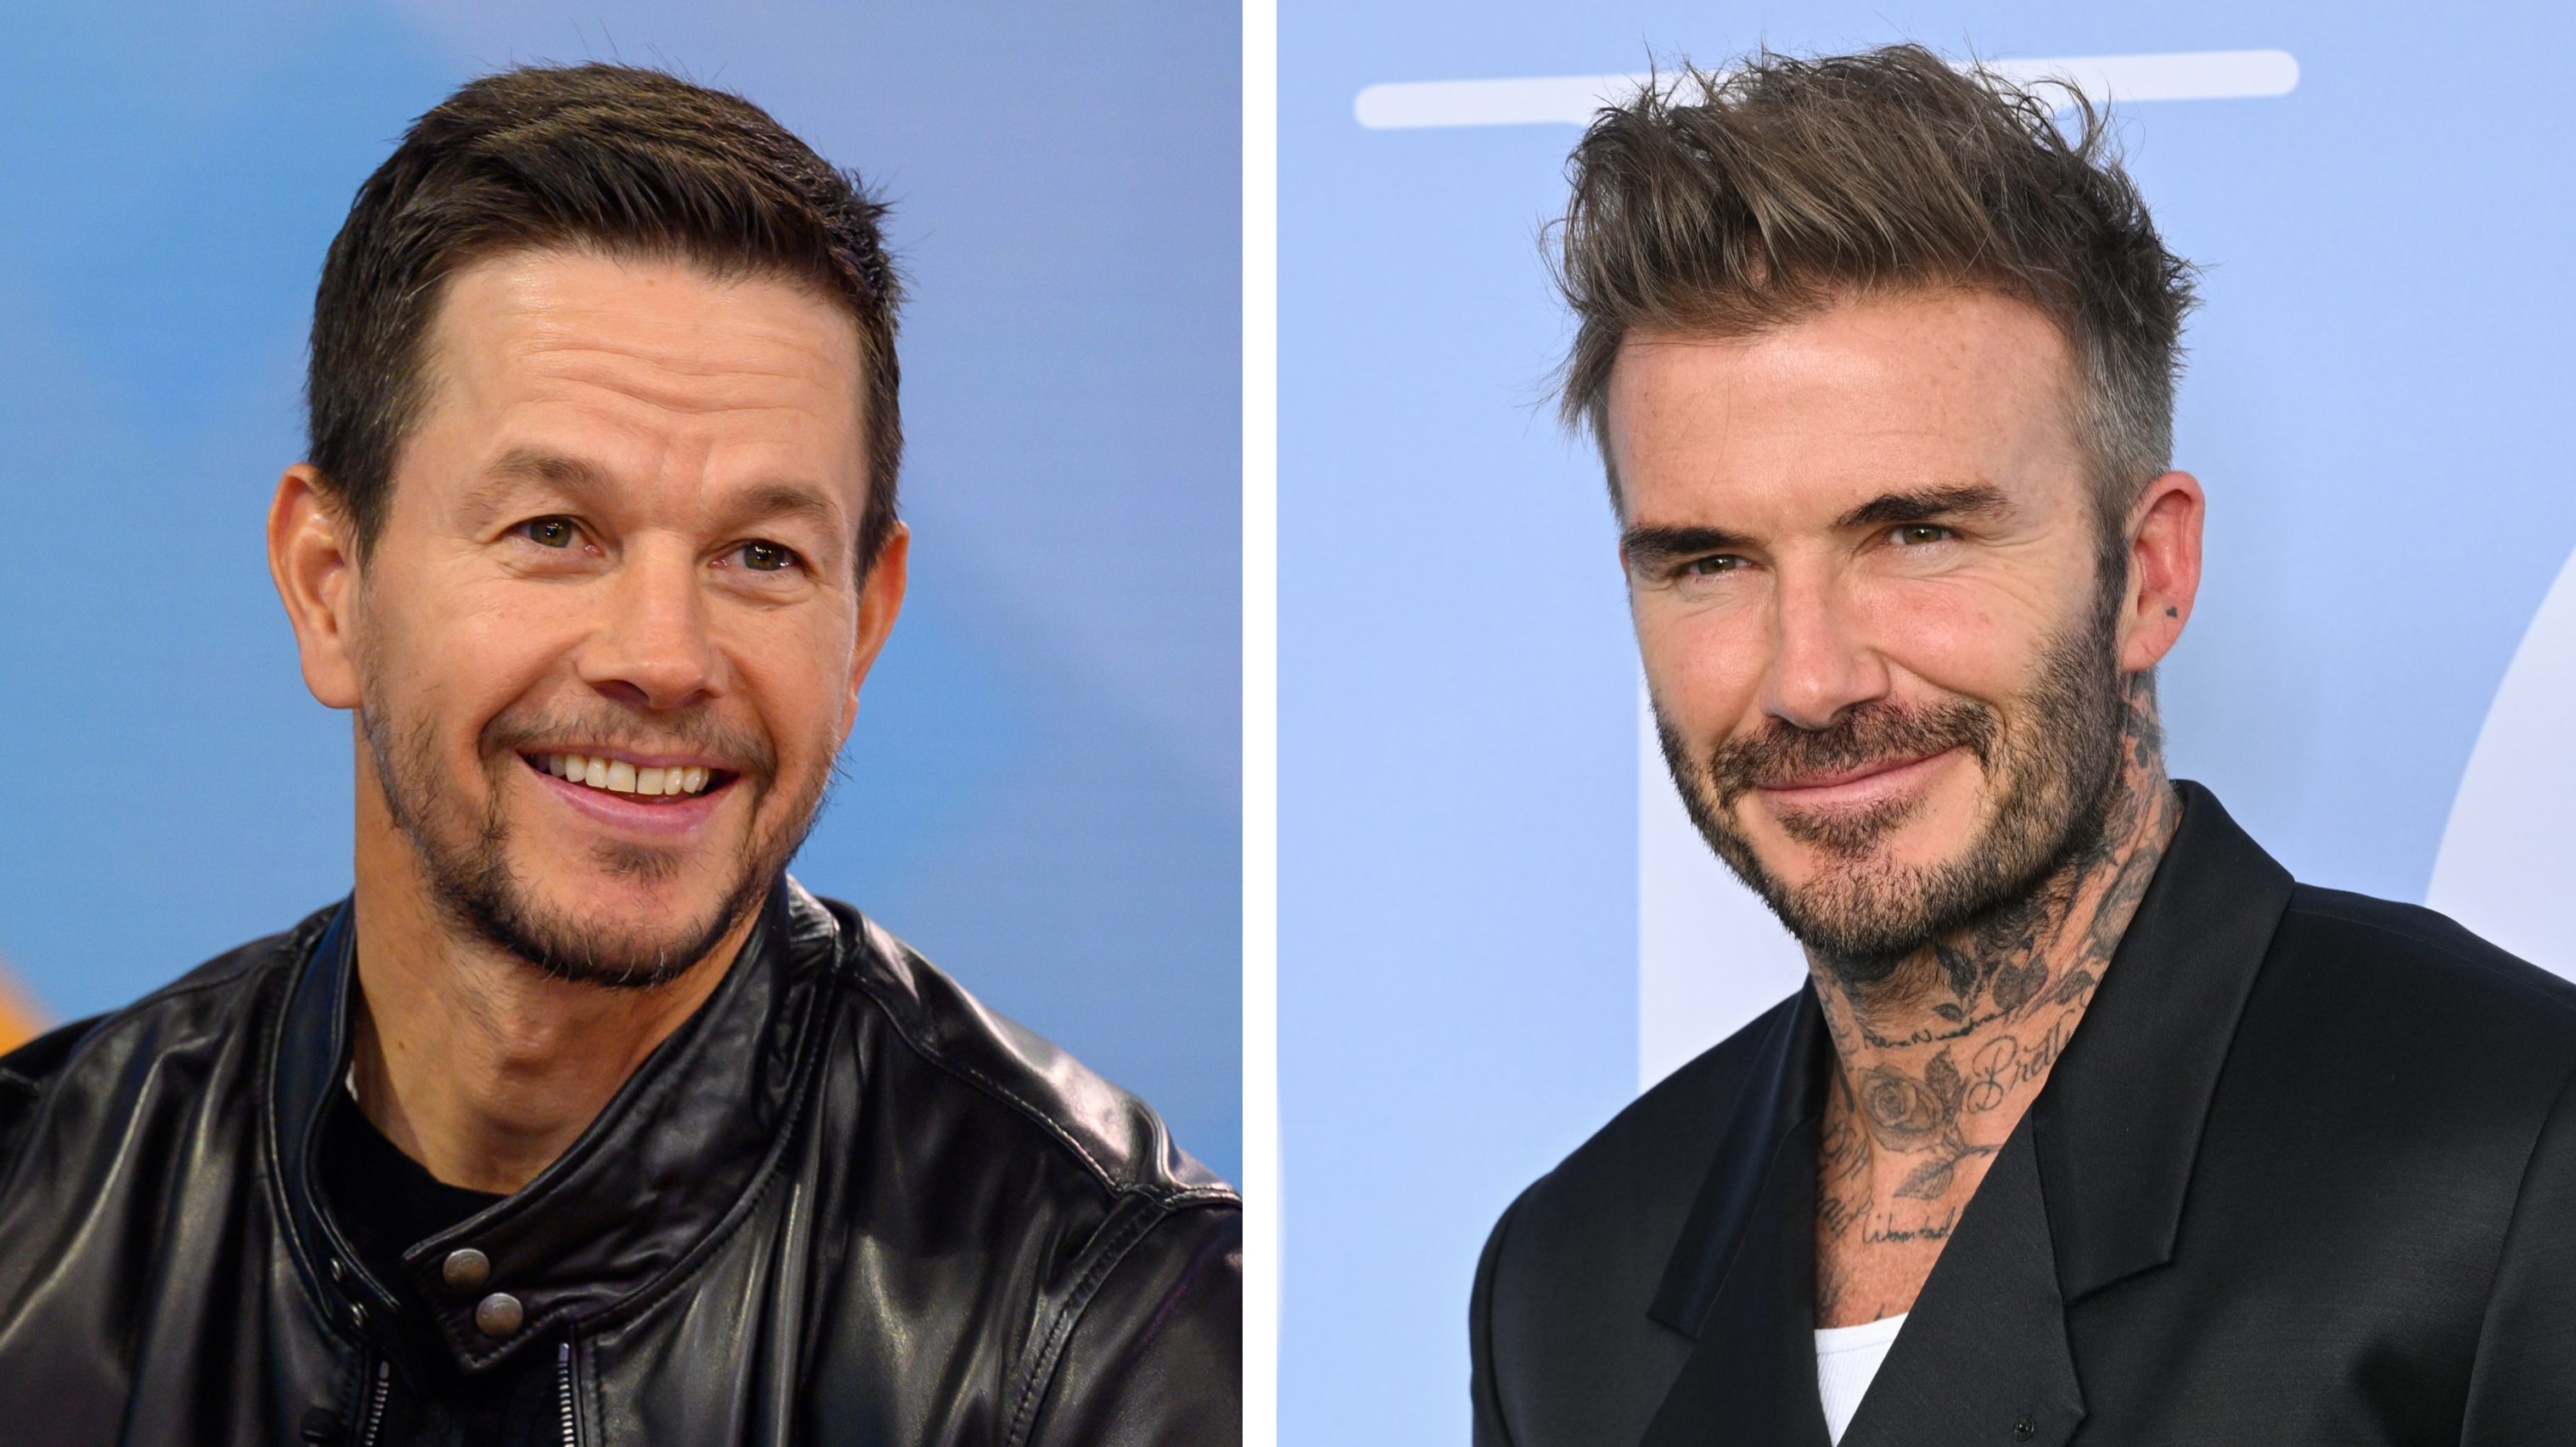 Váratlan találkozás: összefutott David Beckham és Mark Wahlberg